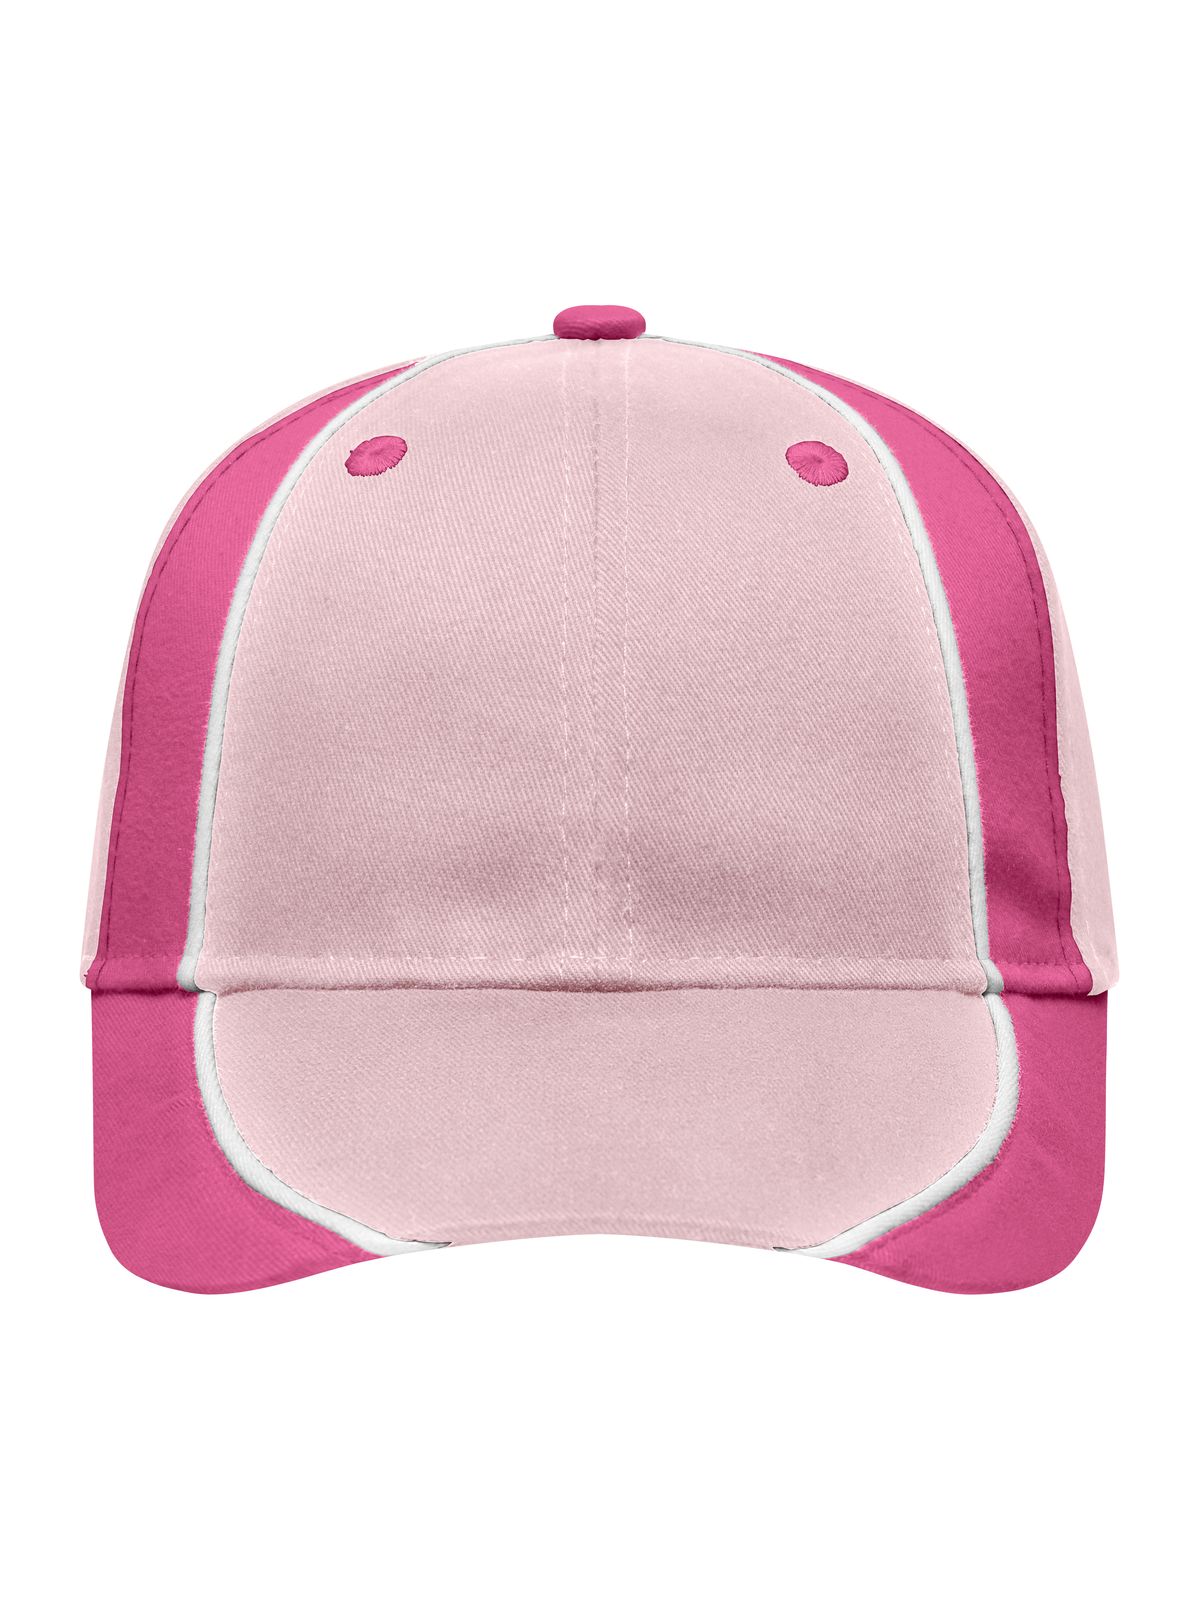 club-cap-light-pink-pink-white.webp